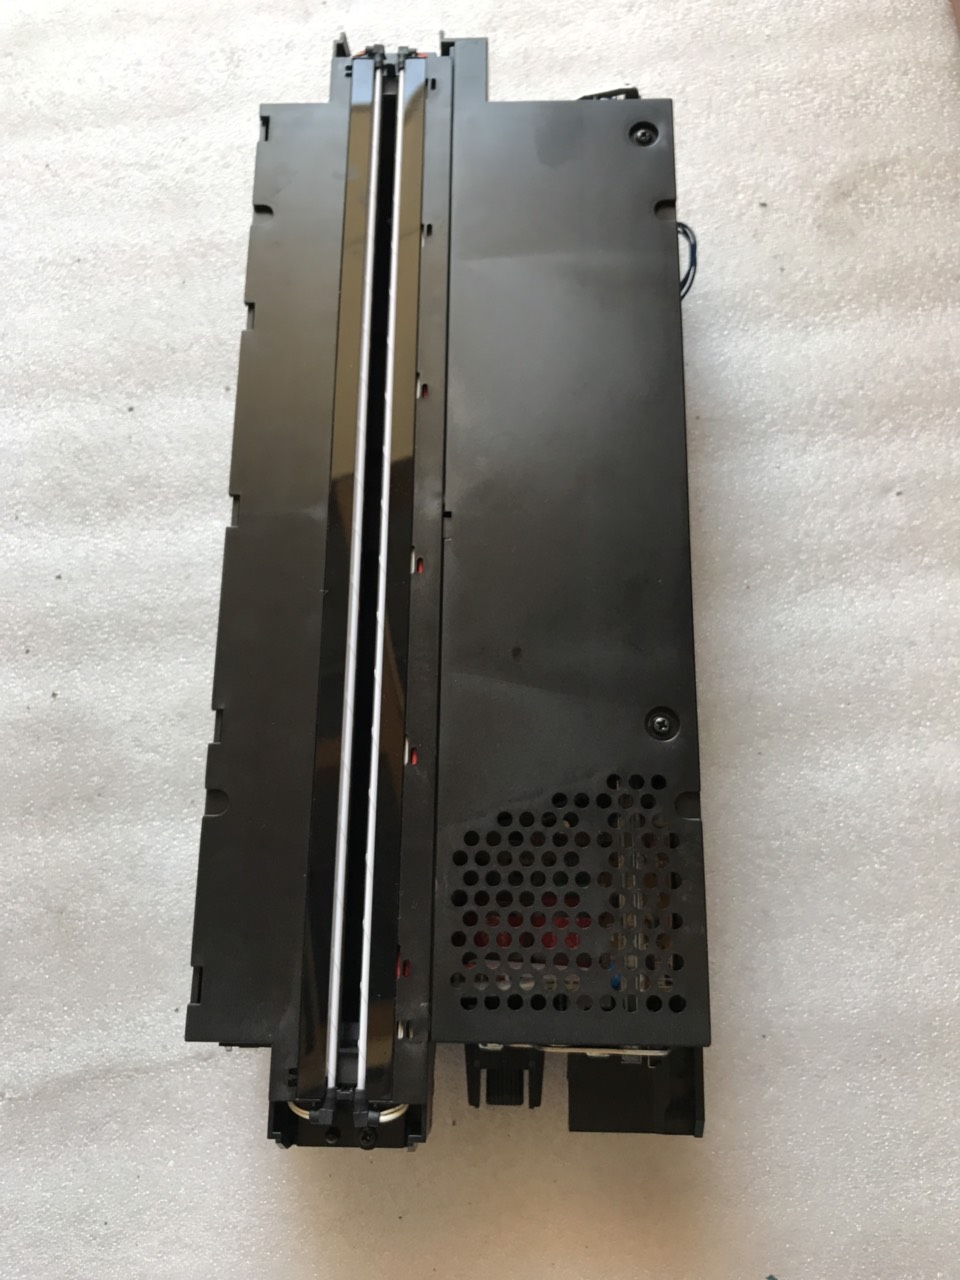 Đèn copy máy hp scanjet N9120 ( đèn dưới)